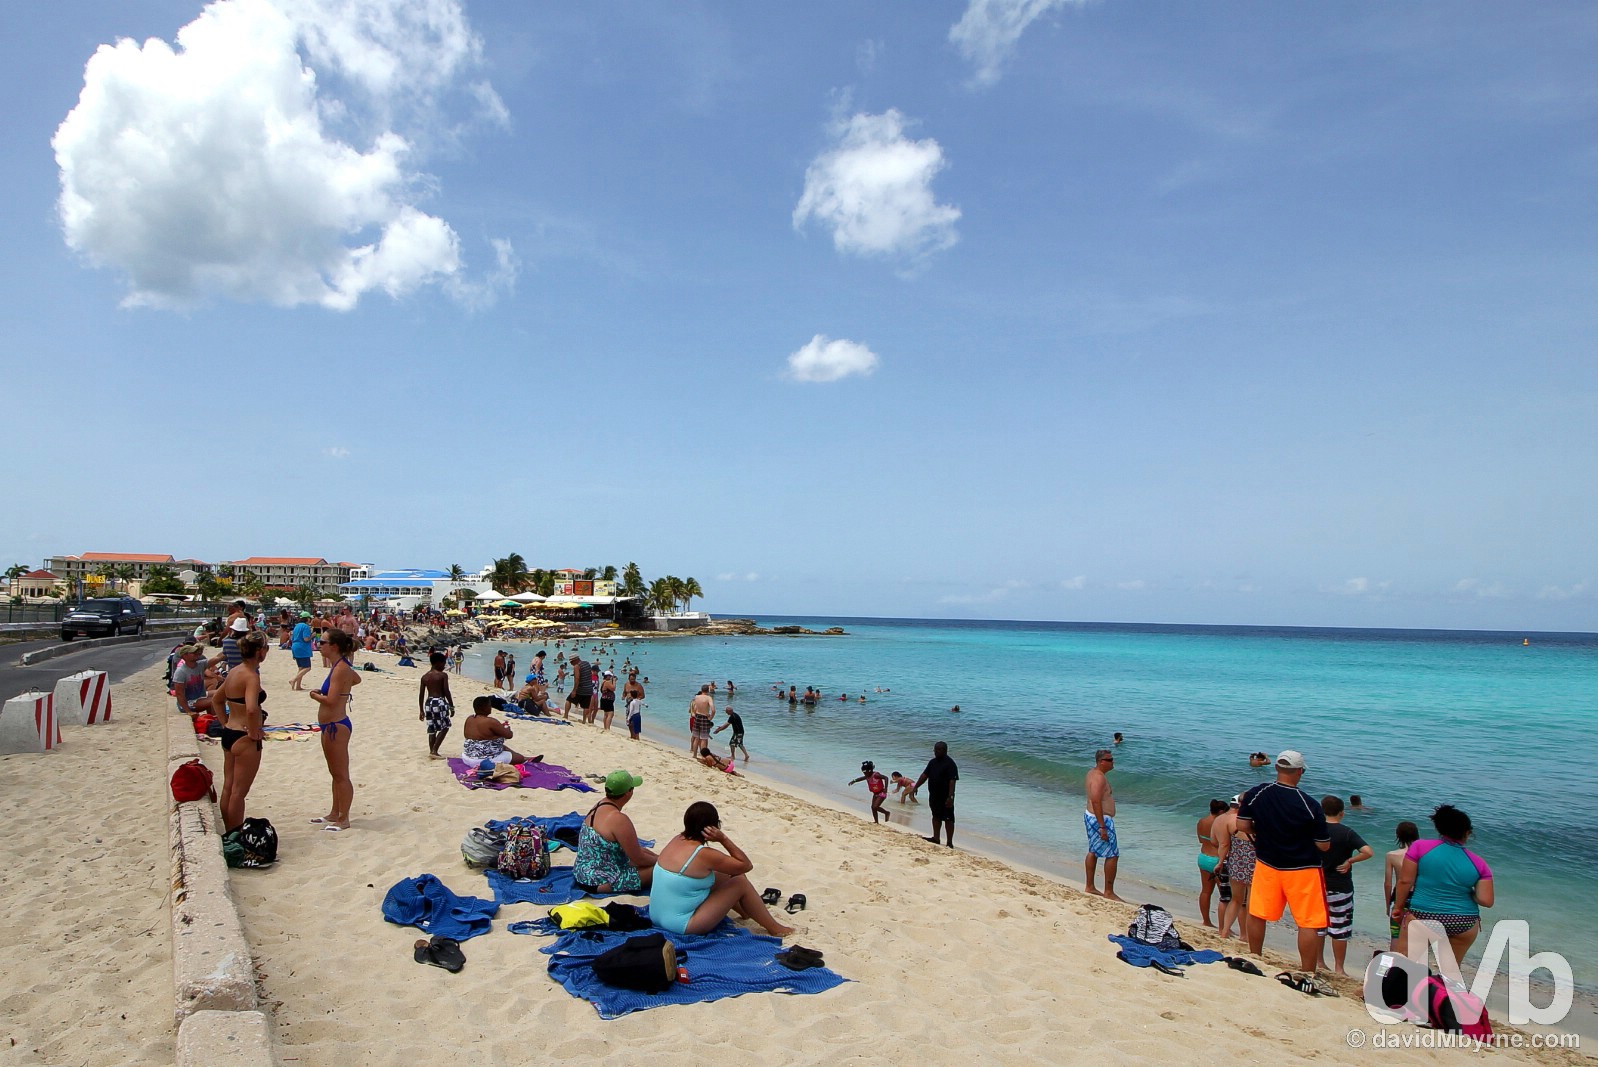 Maho Beach, Sint Maarten, Lesser Antilles. June 9, 2015.